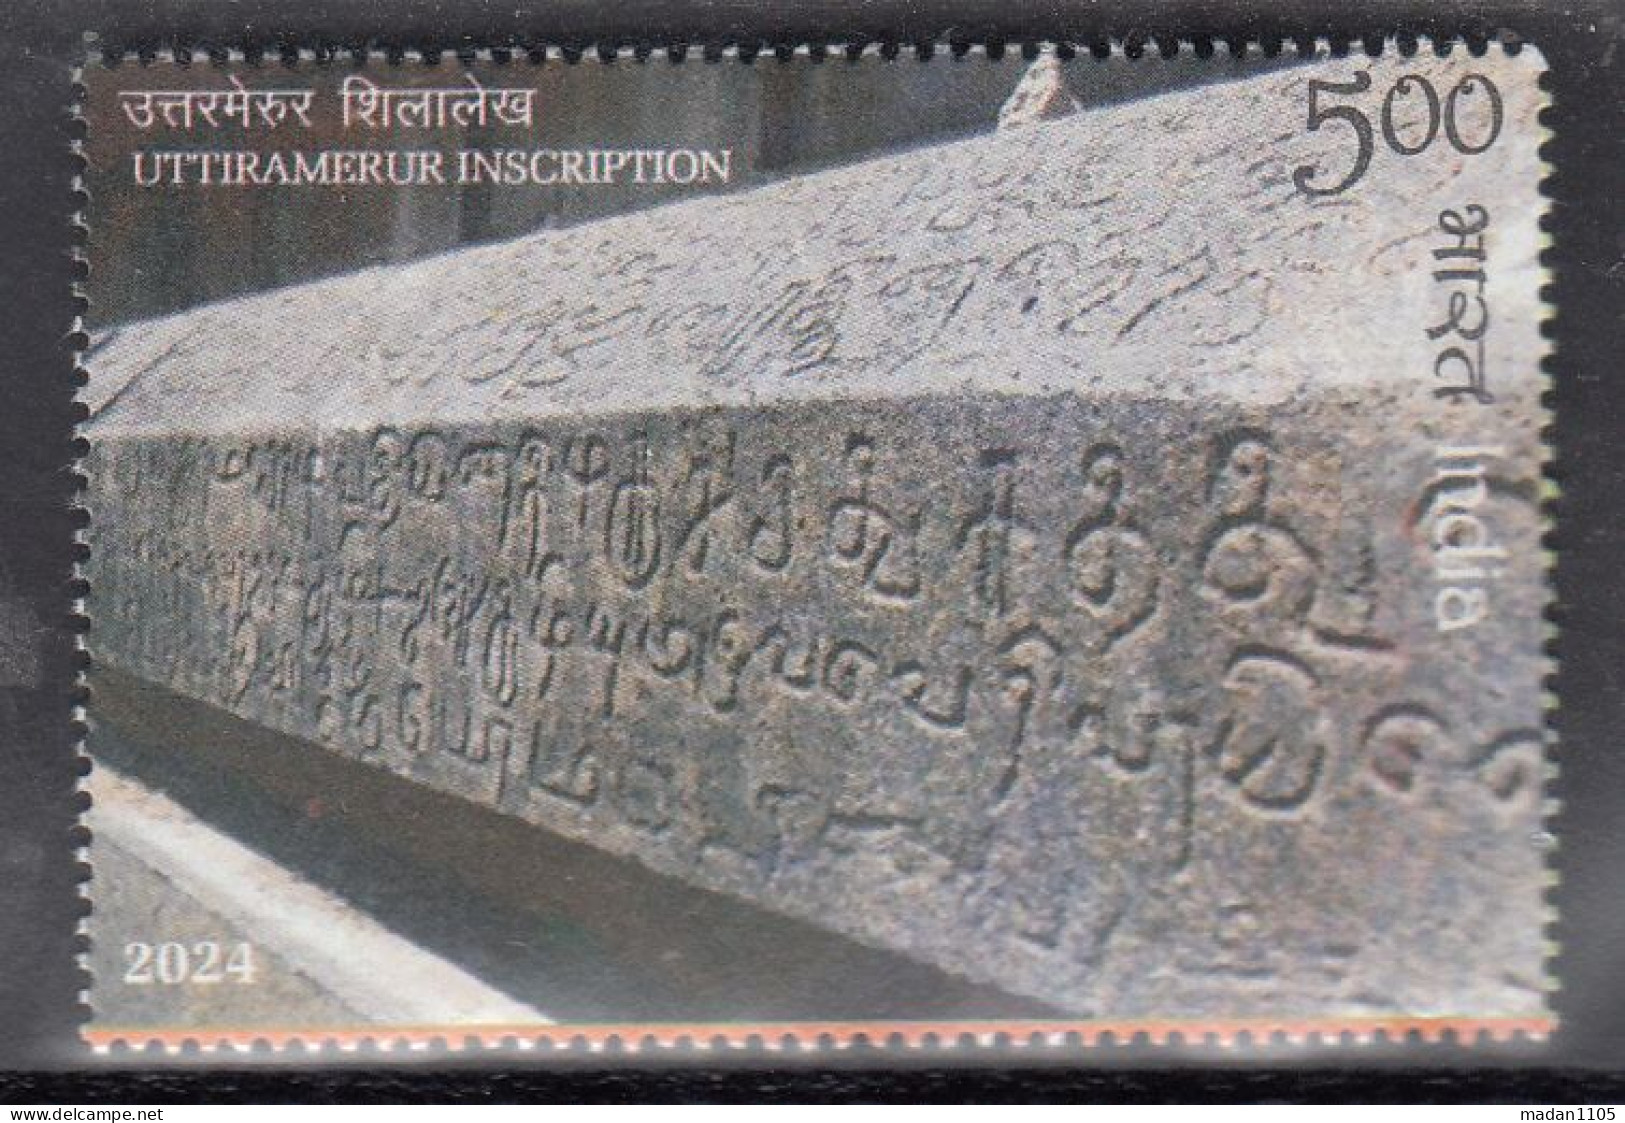 INDIA, 2024, Bharat - The Mother Of Democracy, Uttiramerur Inscription,   1 V,   MNH, (**) - Neufs